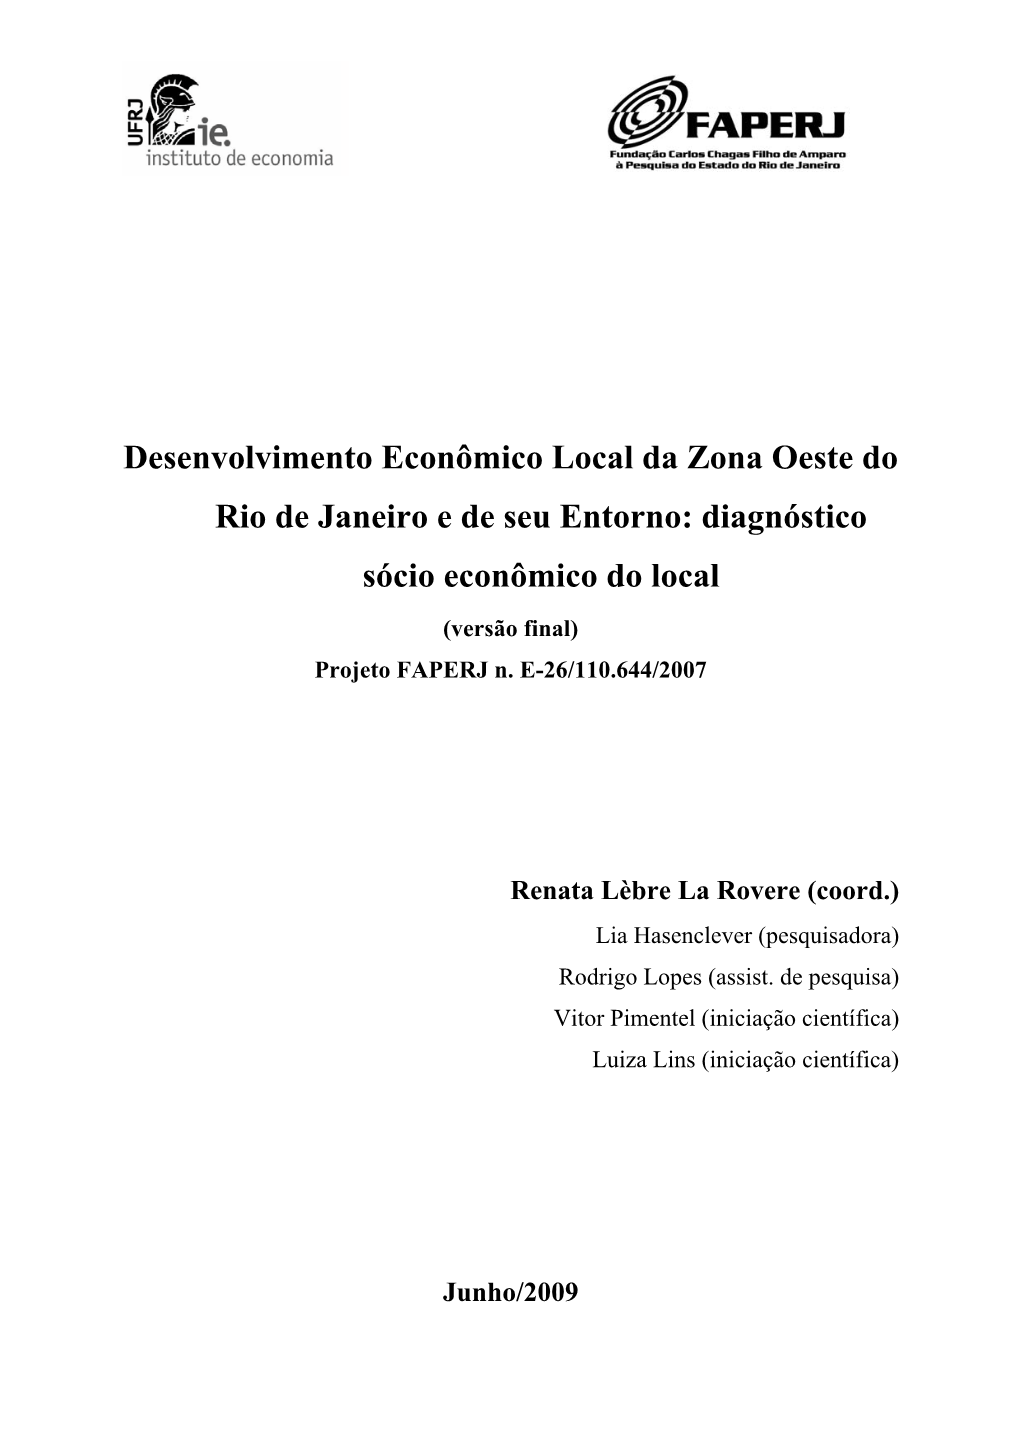 Desenvolvimento Econômico Local Da Zona Oeste Do Rio De Janeiro E De Seu Entorno: Diagnóstico Sócio Econômico Do Local (Versão Final) Projeto FAPERJ N